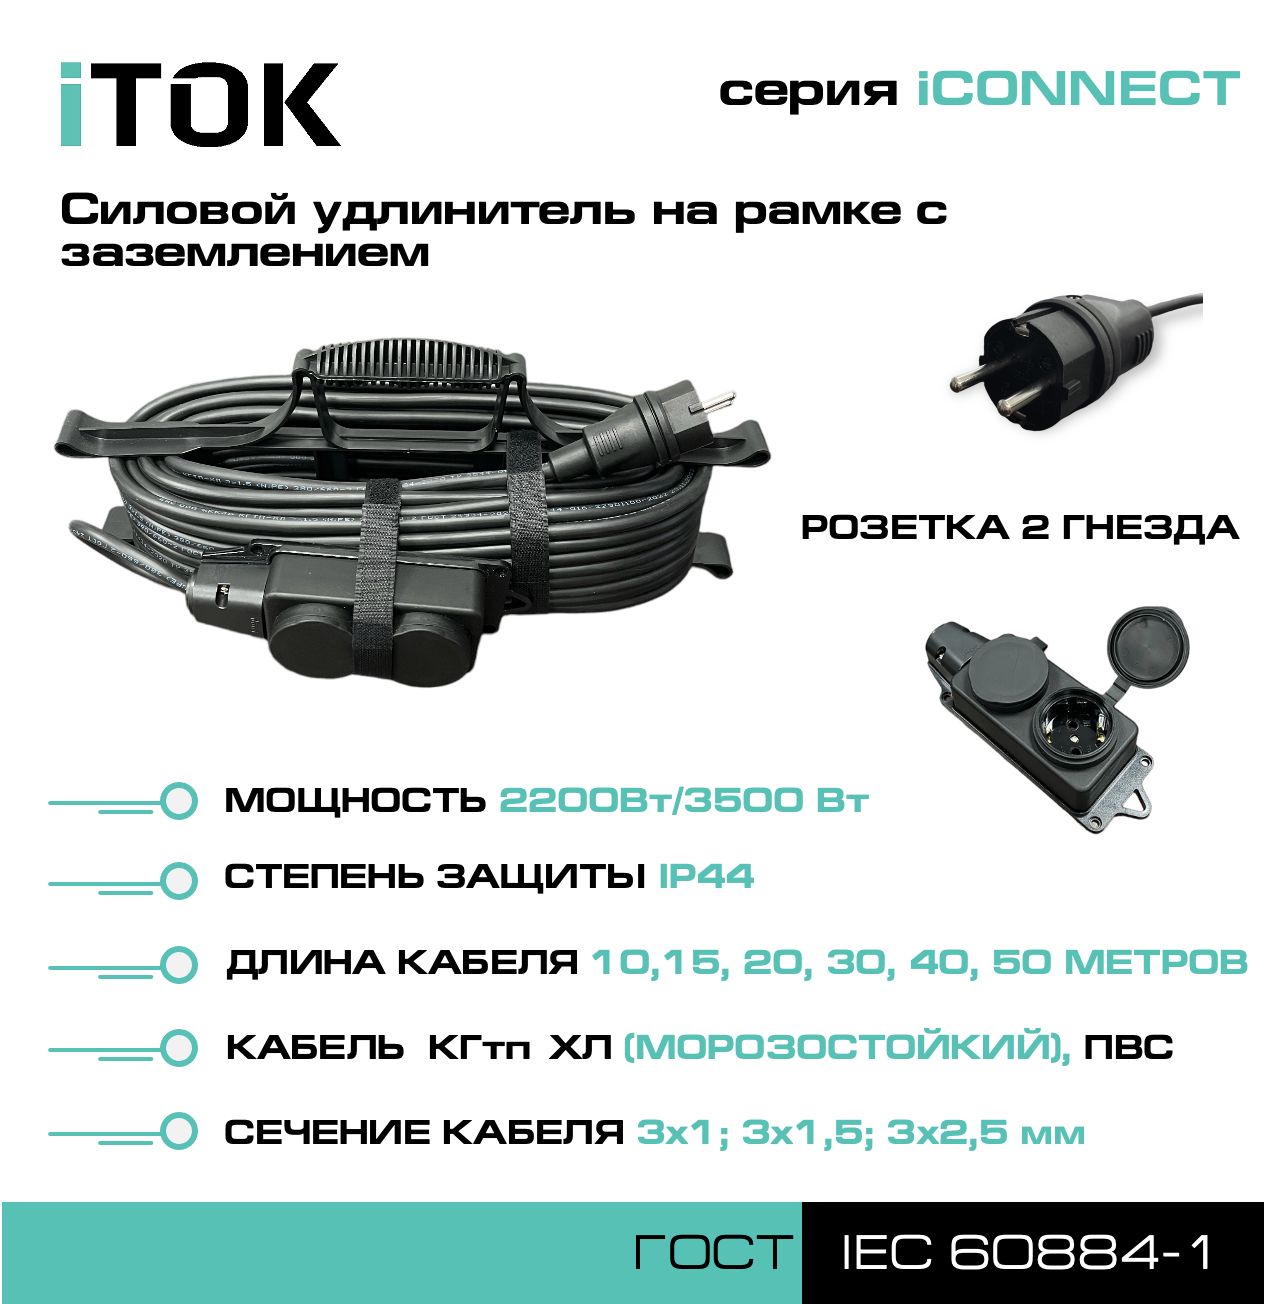 Удлинитель на рамке с заземлением серии iTOK iCONNECT КГтп-ХЛ 3х1,5 мм 2 гнезда IP44 20 м удлинитель navigator npe s 05 300 x 2x0 75 б з 5 гнезда 3м 71553